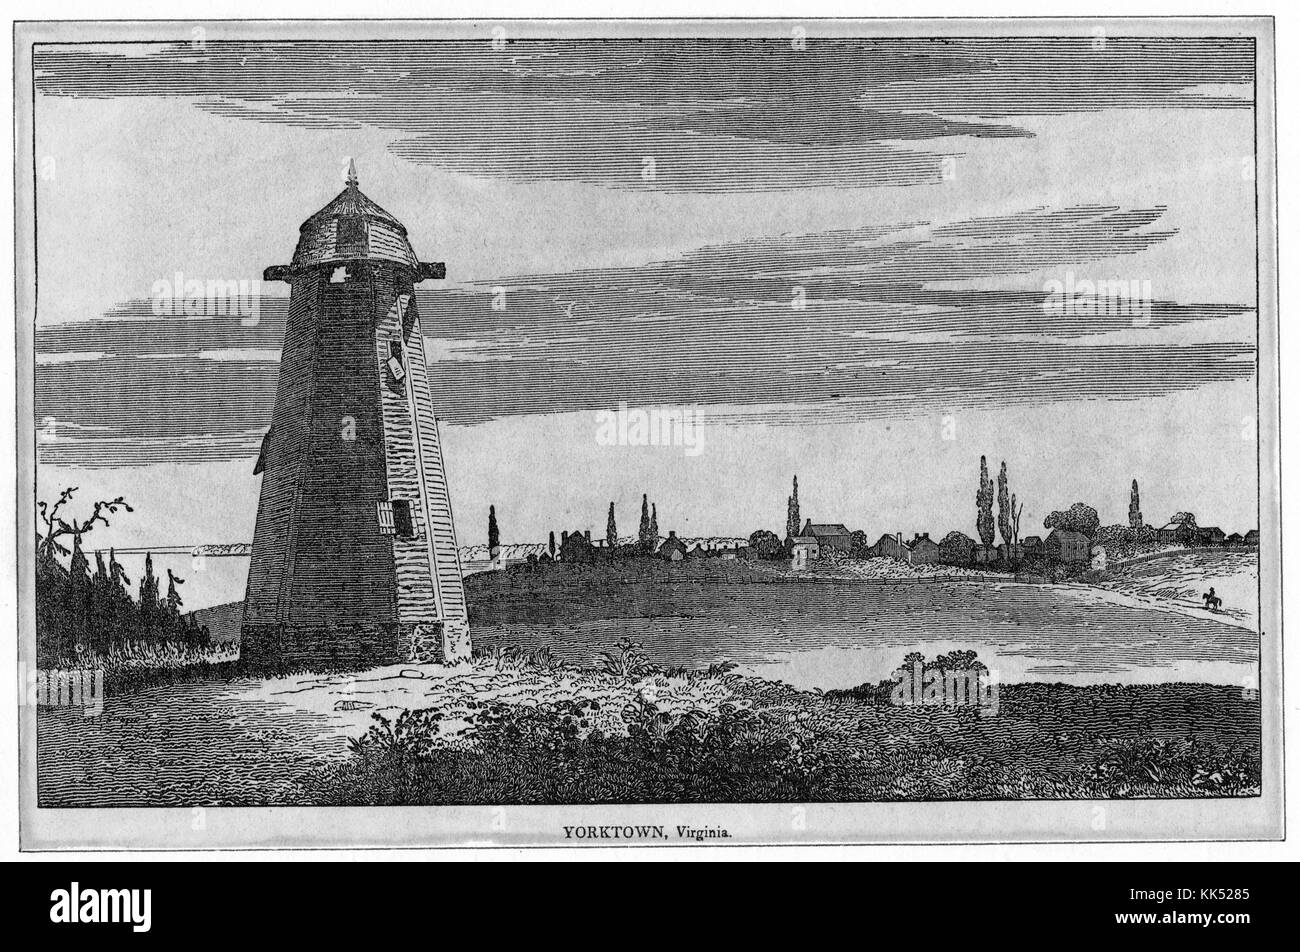 Une gravure d'une peinture de paysage de Yorktown, un phare est vu au premier plan de l'image tandis que la ville elle-même peut être vue en arrière-plan, La ville est plus célèbre pour le siège de Yorktown qui a été une victoire pour les forces continentales et françaises combinées contre les Britanniques, Virginie, 1800. De la bibliothèque publique de New York. Banque D'Images